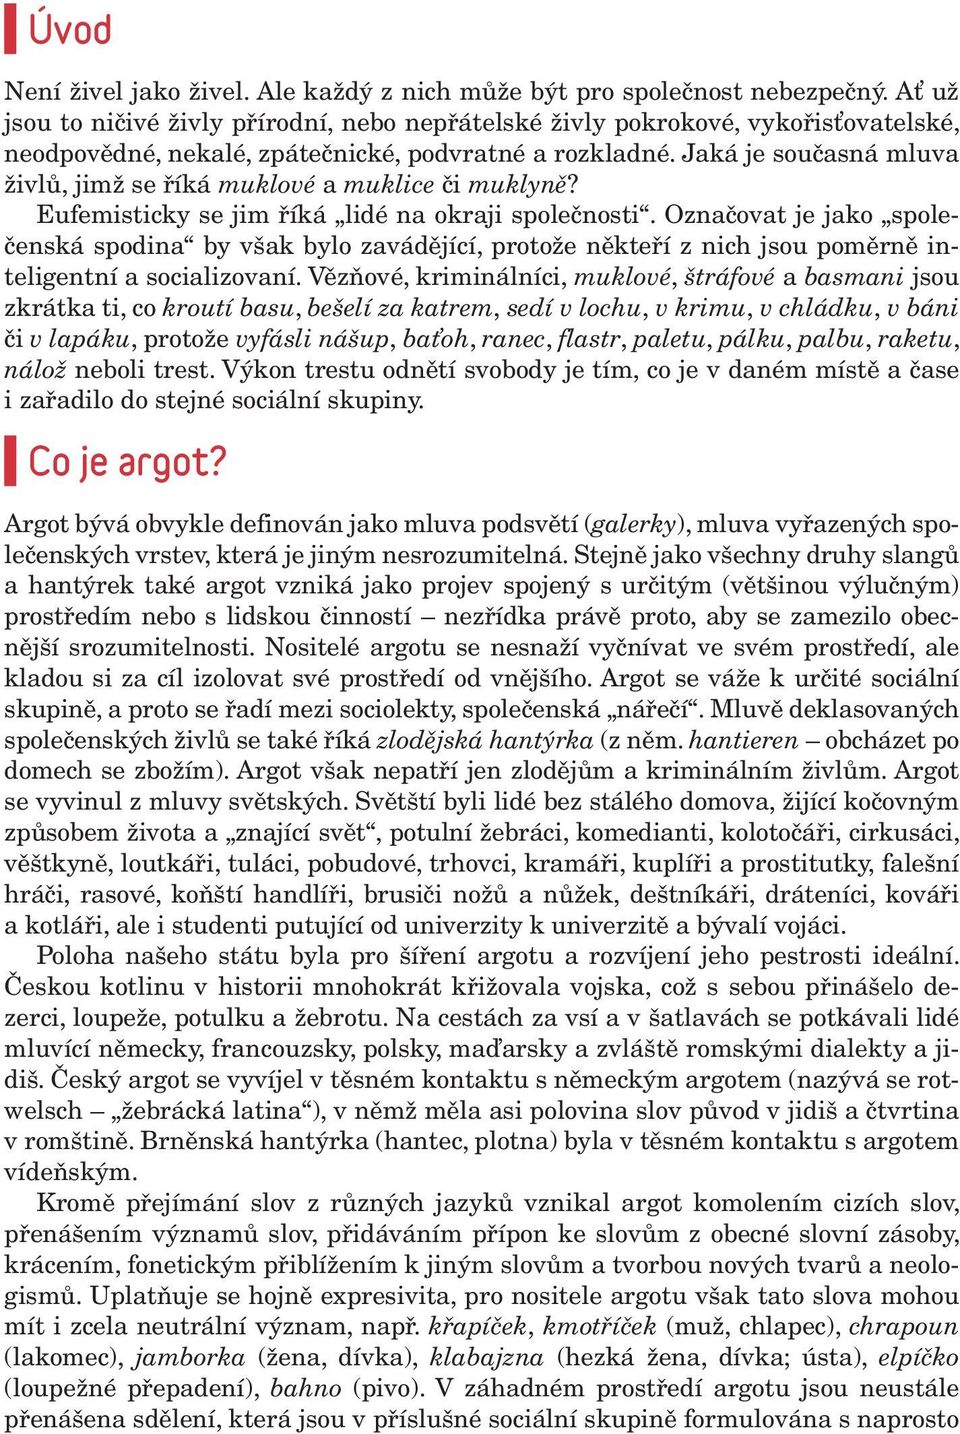 foto Petr Topič, MAFRA) - PDF Stažení zdarma